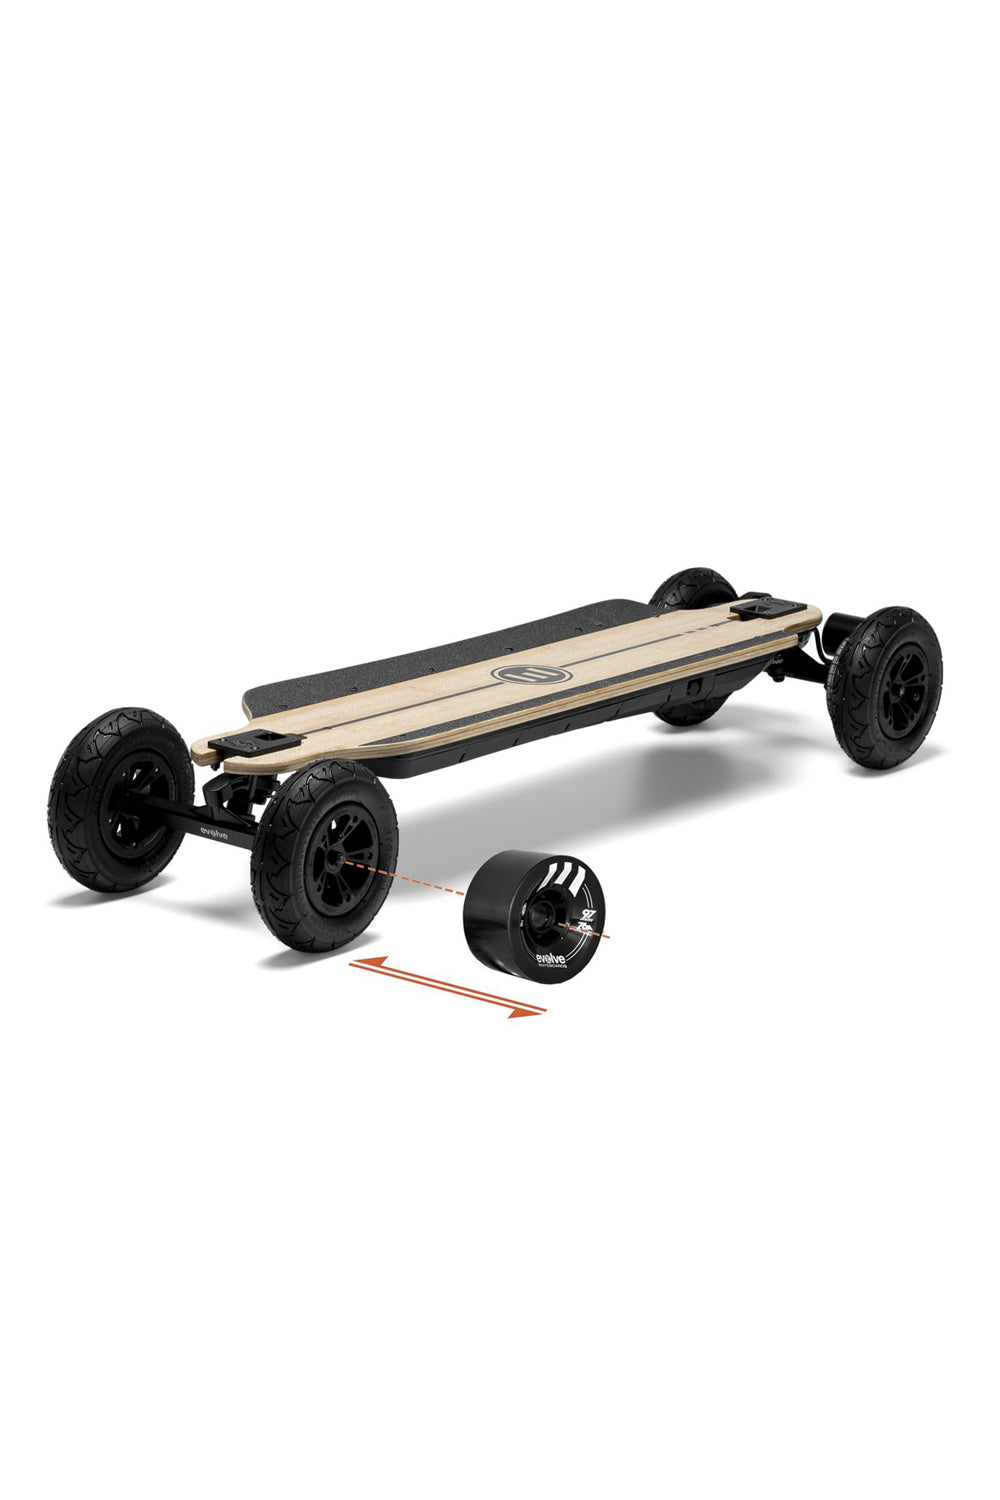 Evolve GTR Bamboo 2 in 1 Skateboard